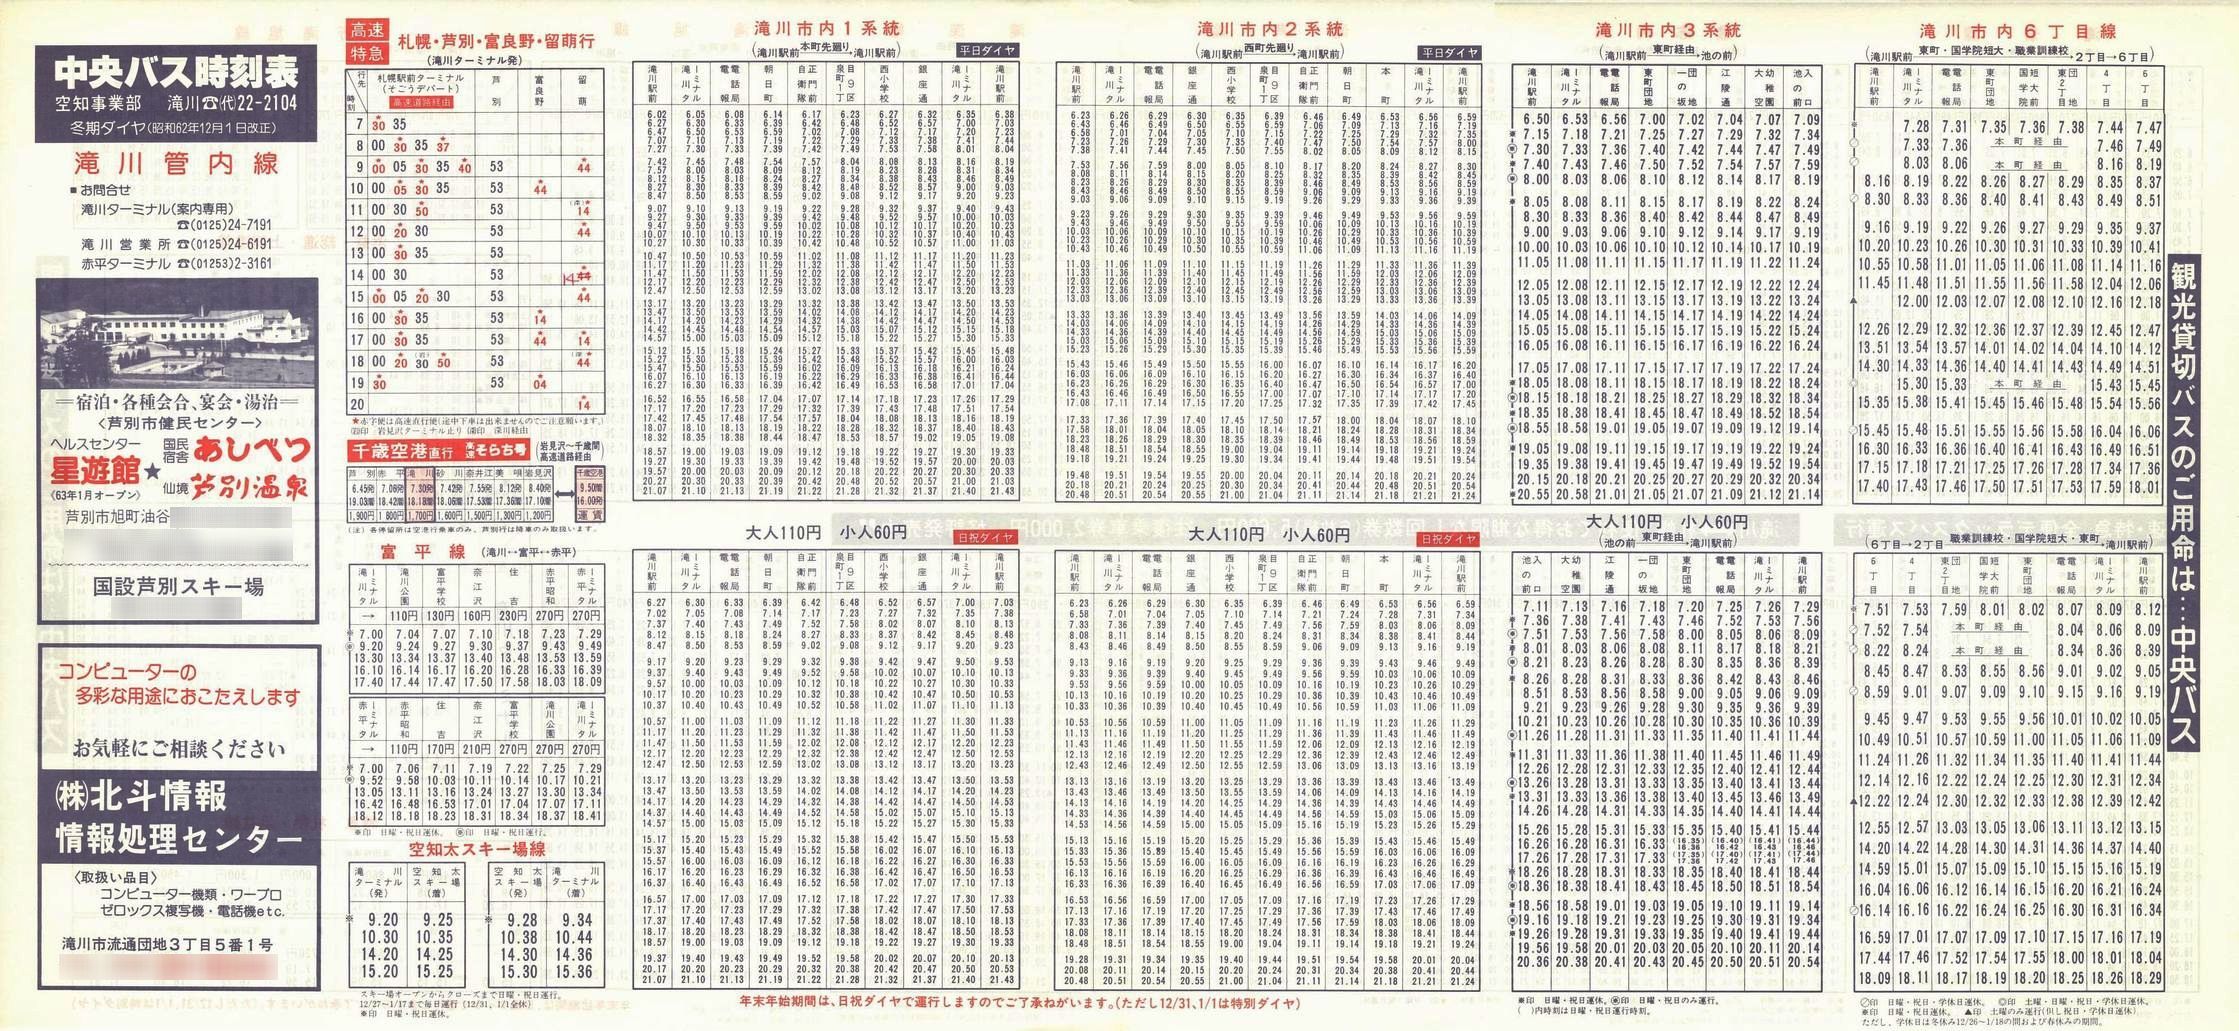 1987-12-01改正_北海道中央バス(空知)_滝川管内線時刻表表面